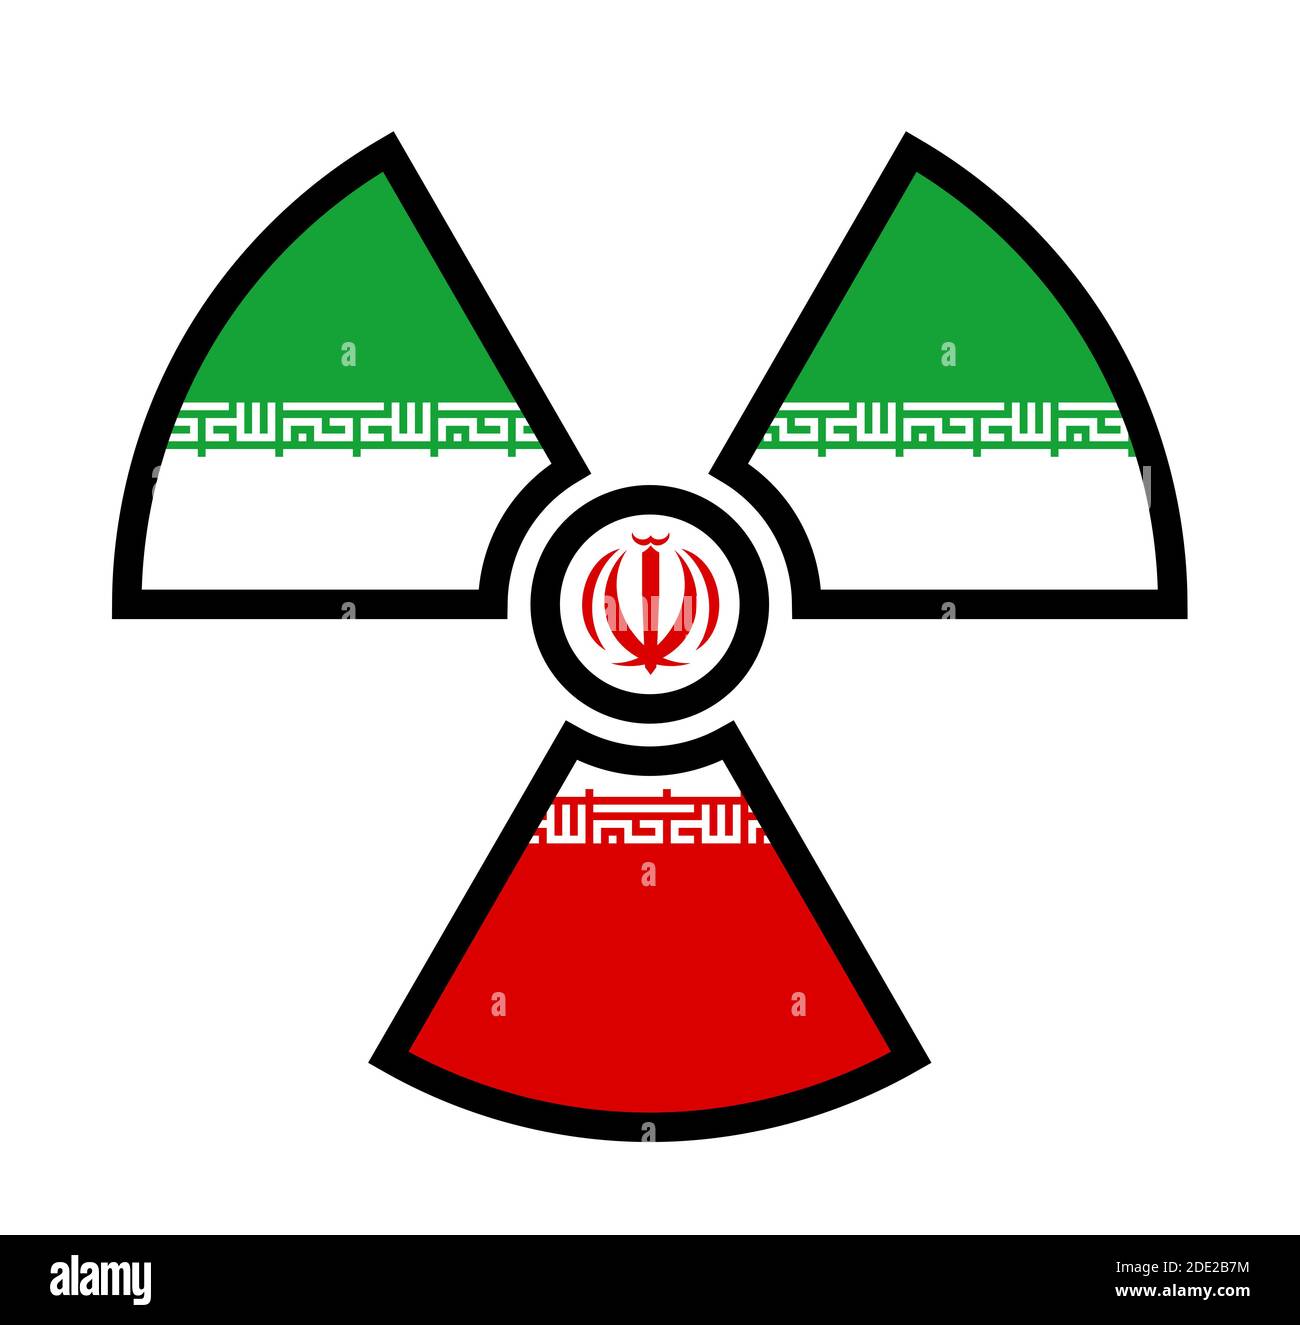 Flagge des Iran als Symbol der Strahlung - Metapher des iranischen Atom- und Atomprogramms - Macht, Bomben, Waffen, Energie. Stockfoto